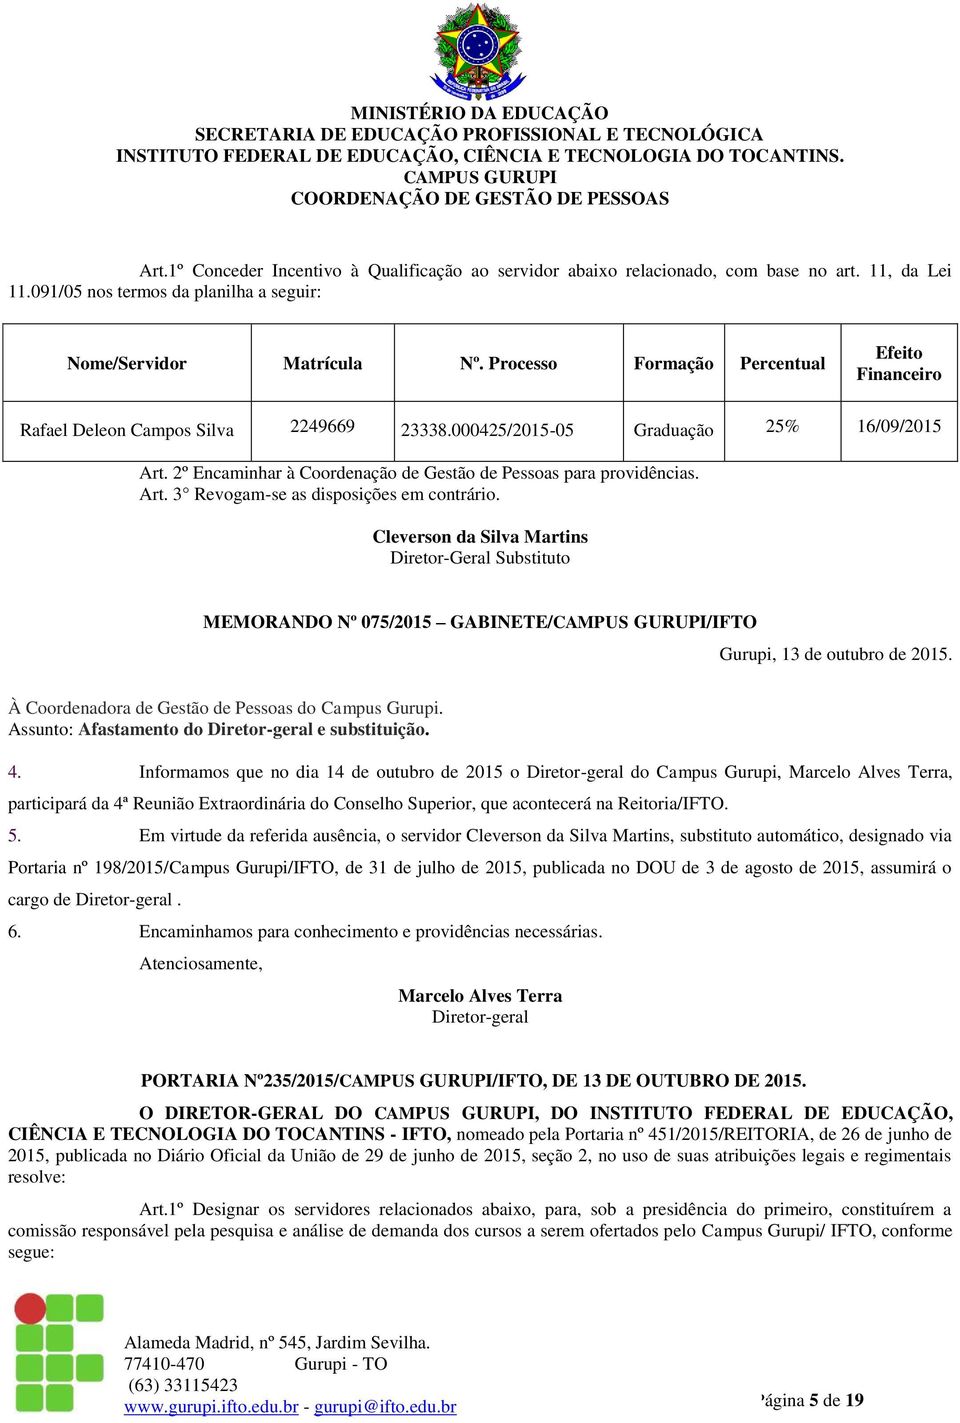 Art. 3 Revogam-se as disposições em contrário. Cleverson da Silva Martins Diretor-Geral Substituto MEMORANDO Nº 075/2015 GABINETE//IFTO Gurupi, 13 de outubro de 2015.